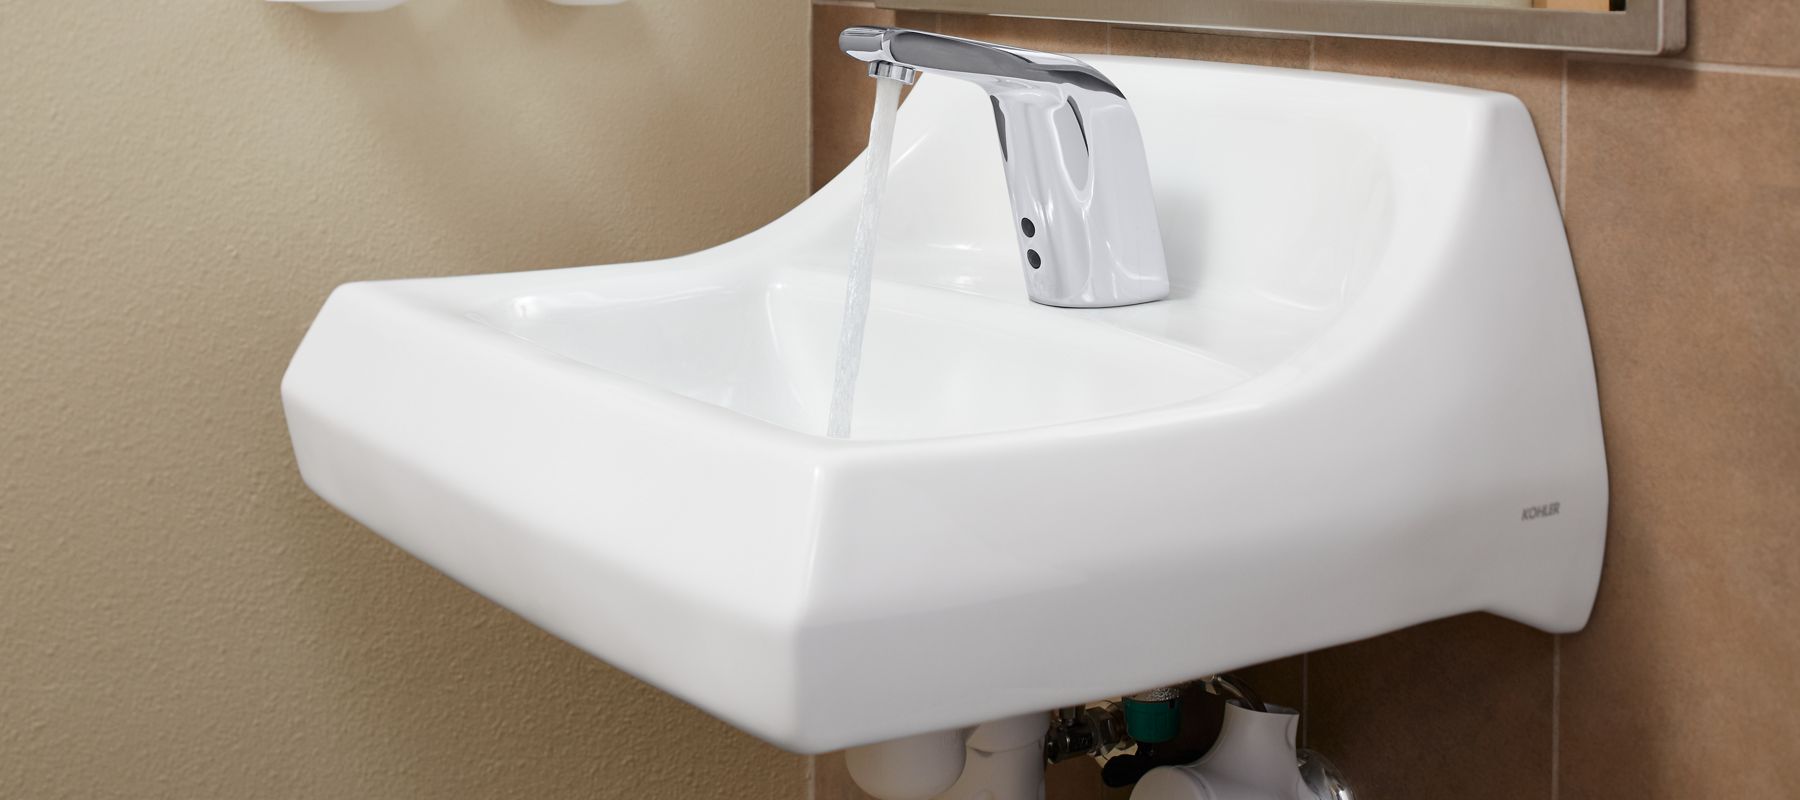 kohler commercial ada bathroom sinks